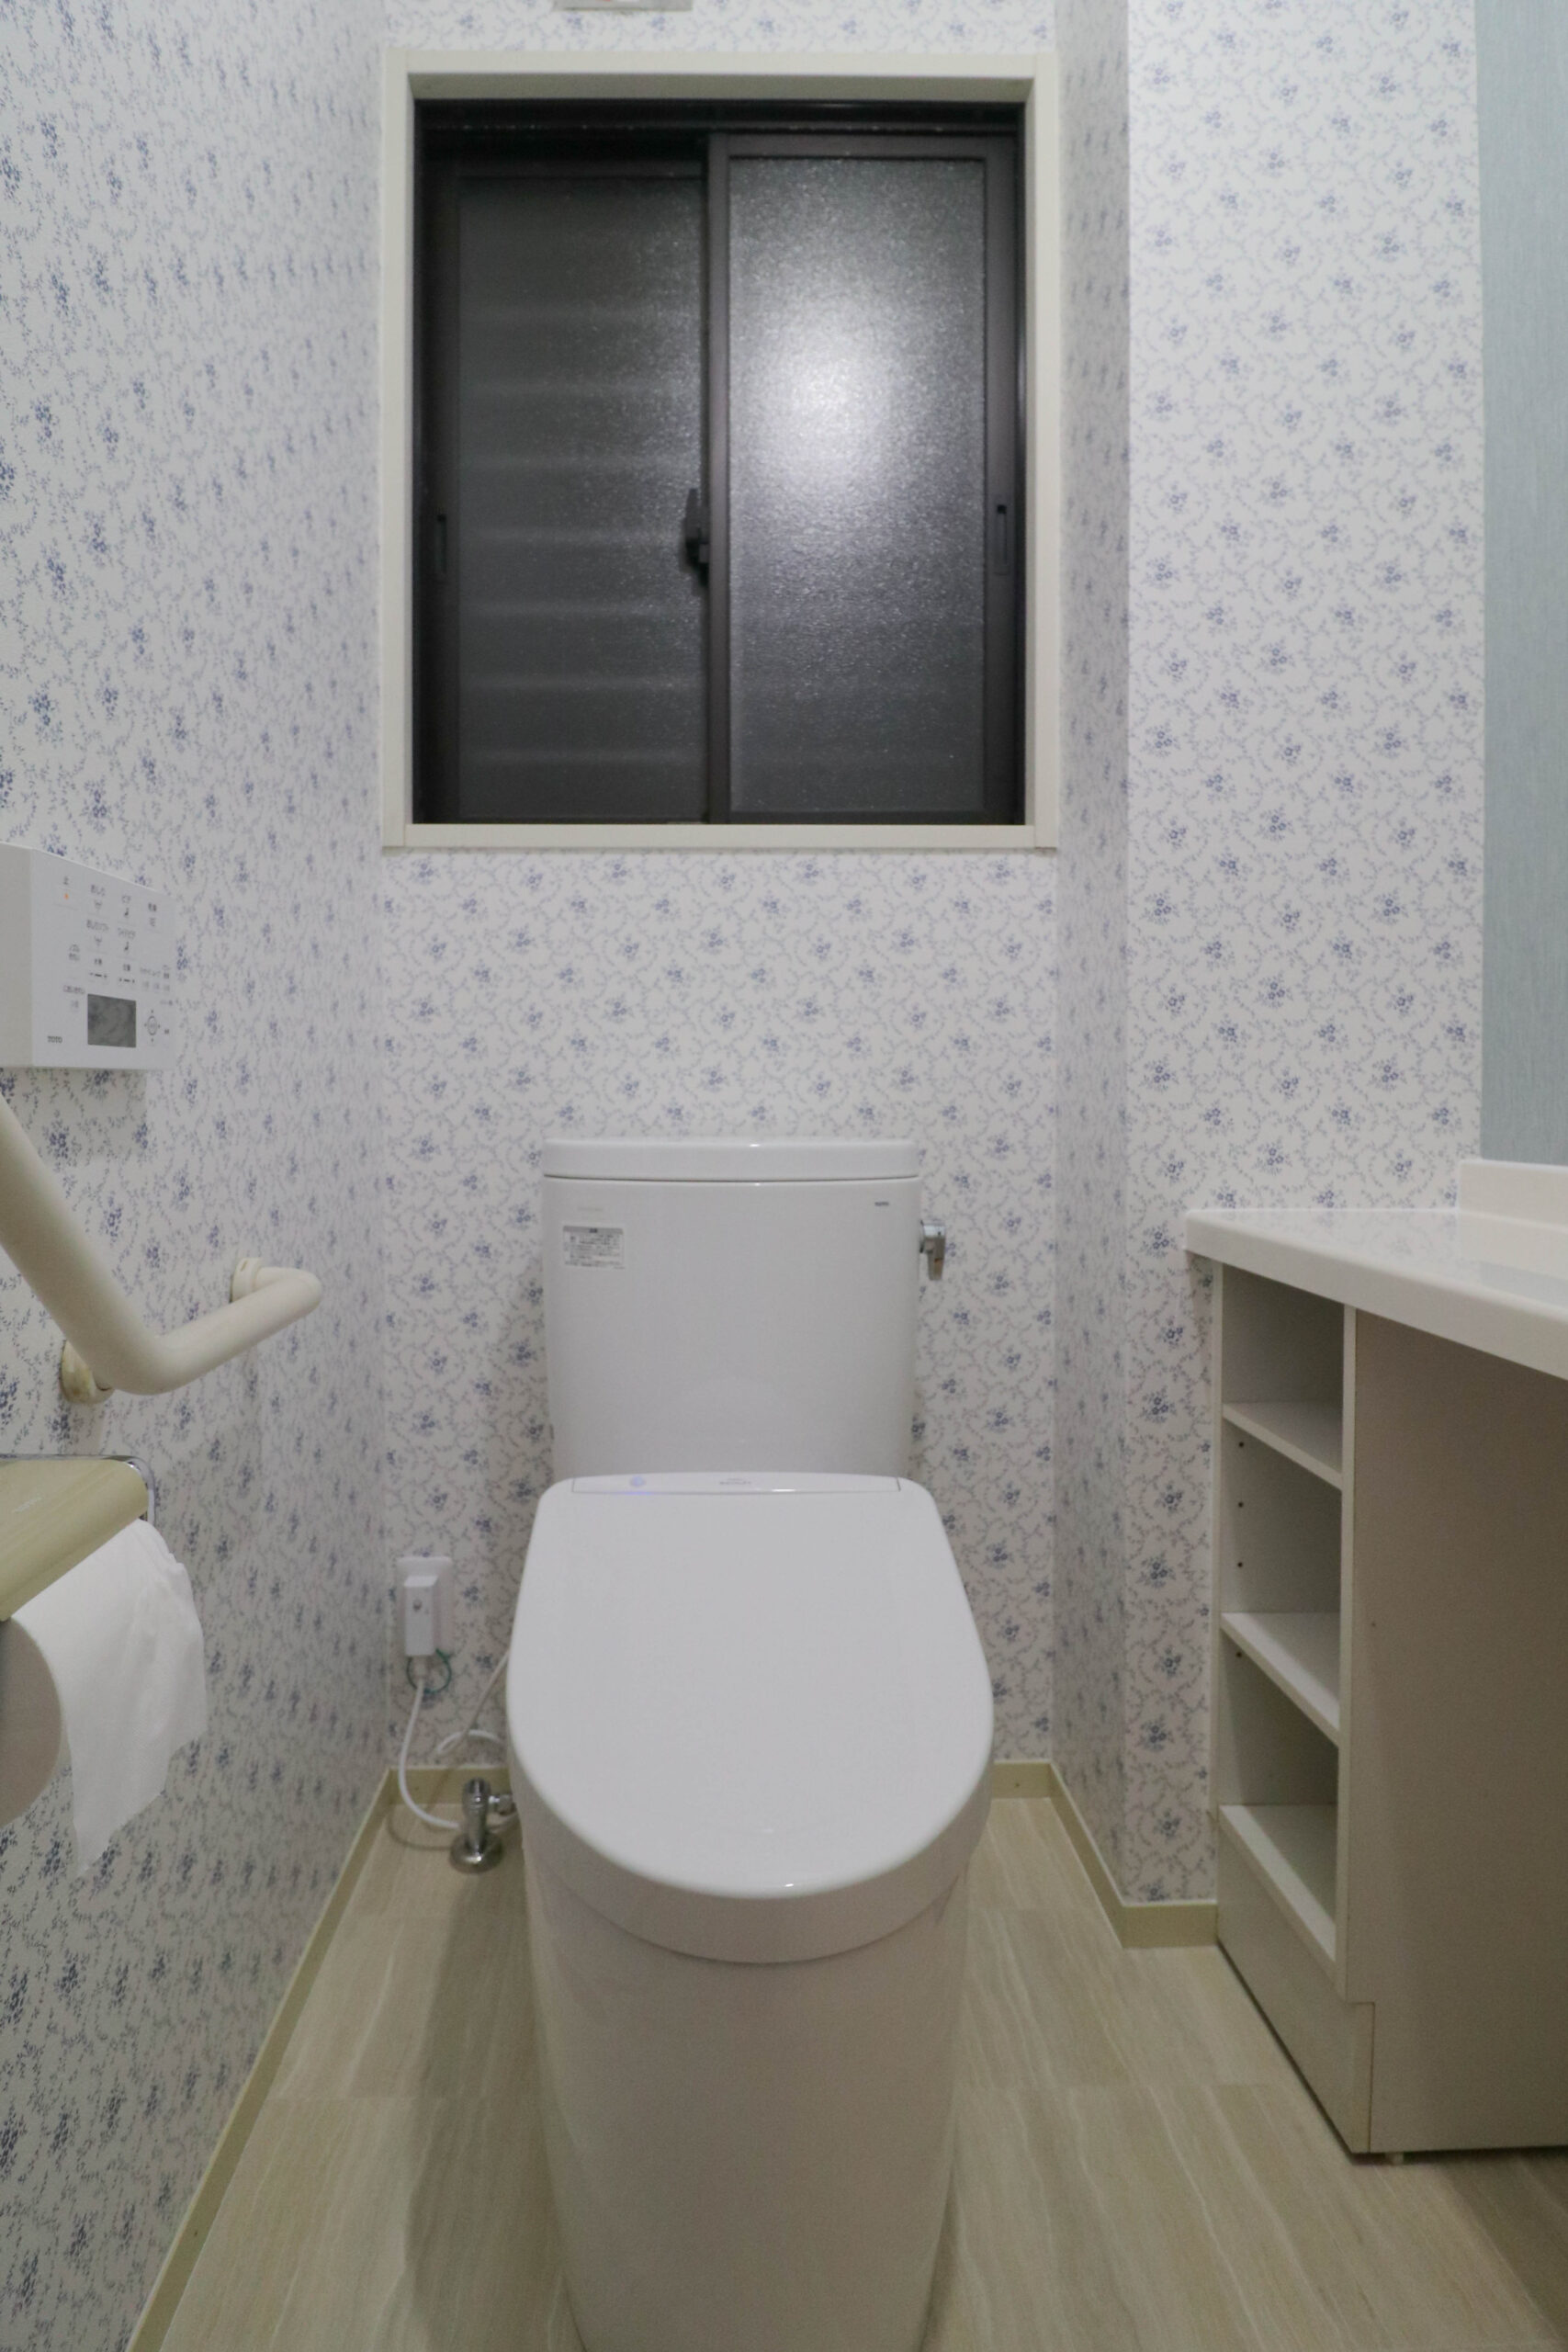 佐賀市大和町 A様 キッチン・トイレ改修工事『お掃除のしやすさにこだわった空間』